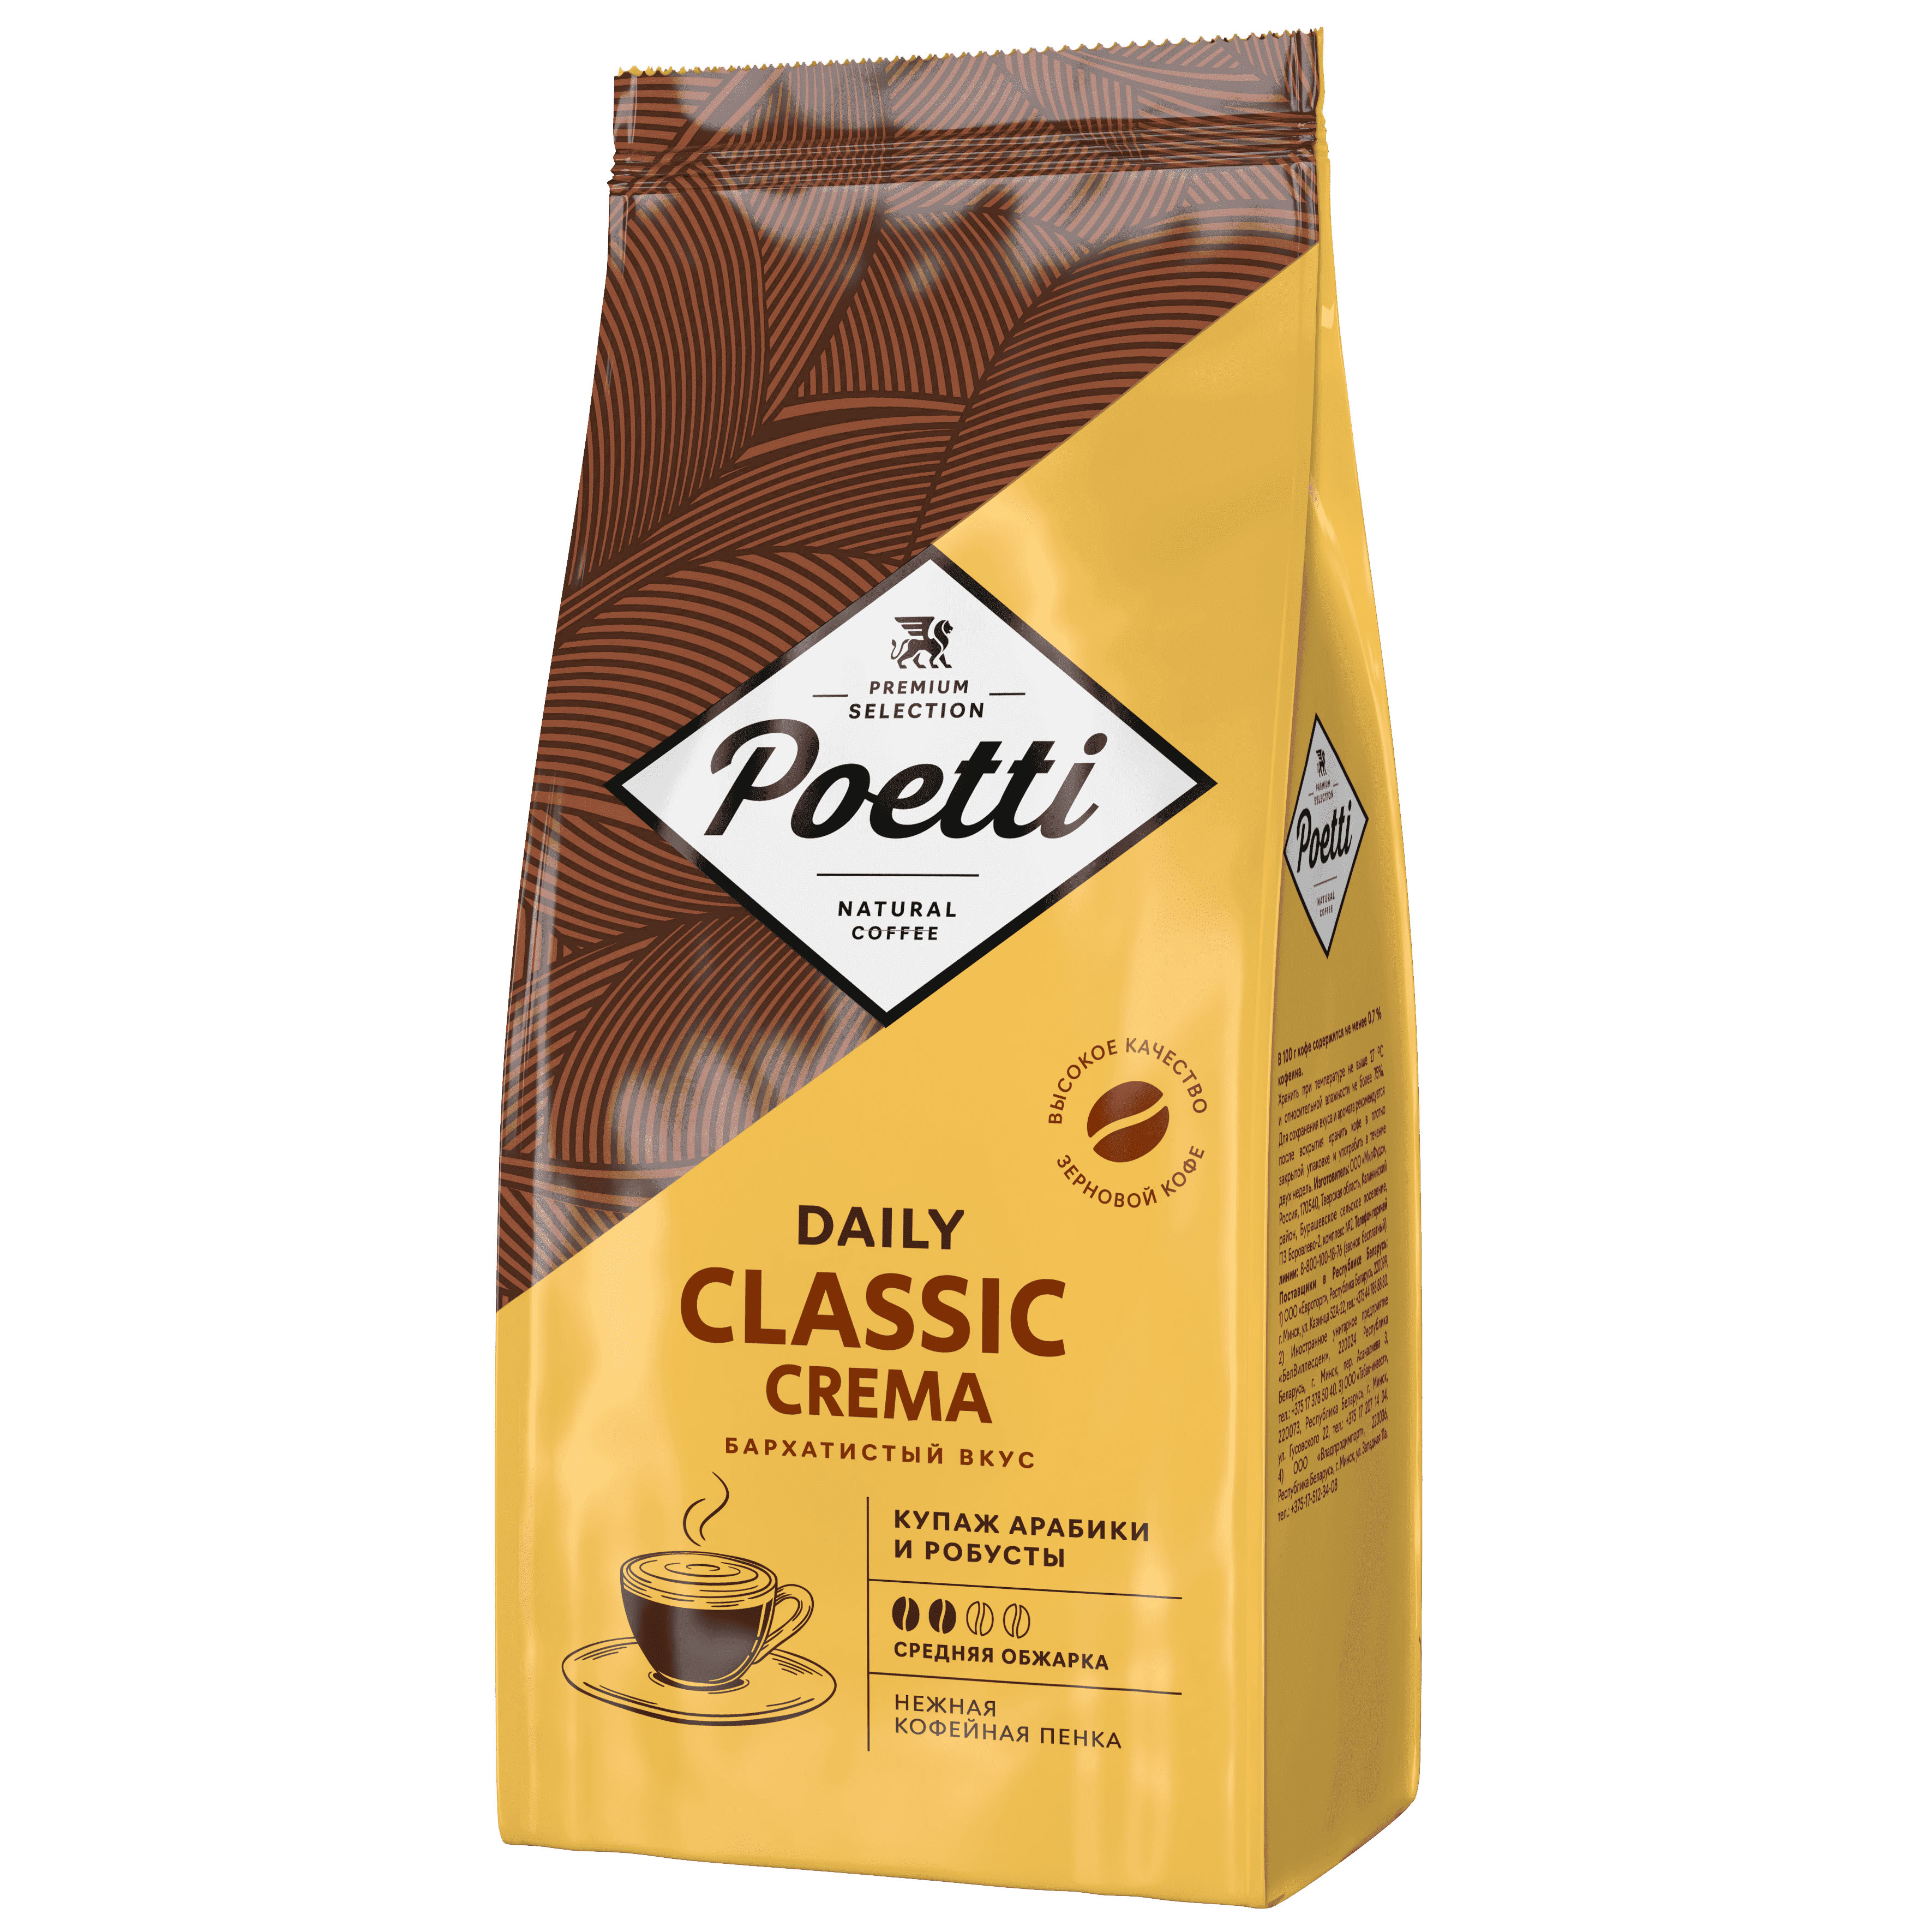 Кофе Poetti Classic Crema 1 кг кофе в зёрнах poetti daily classic crema 1 кг